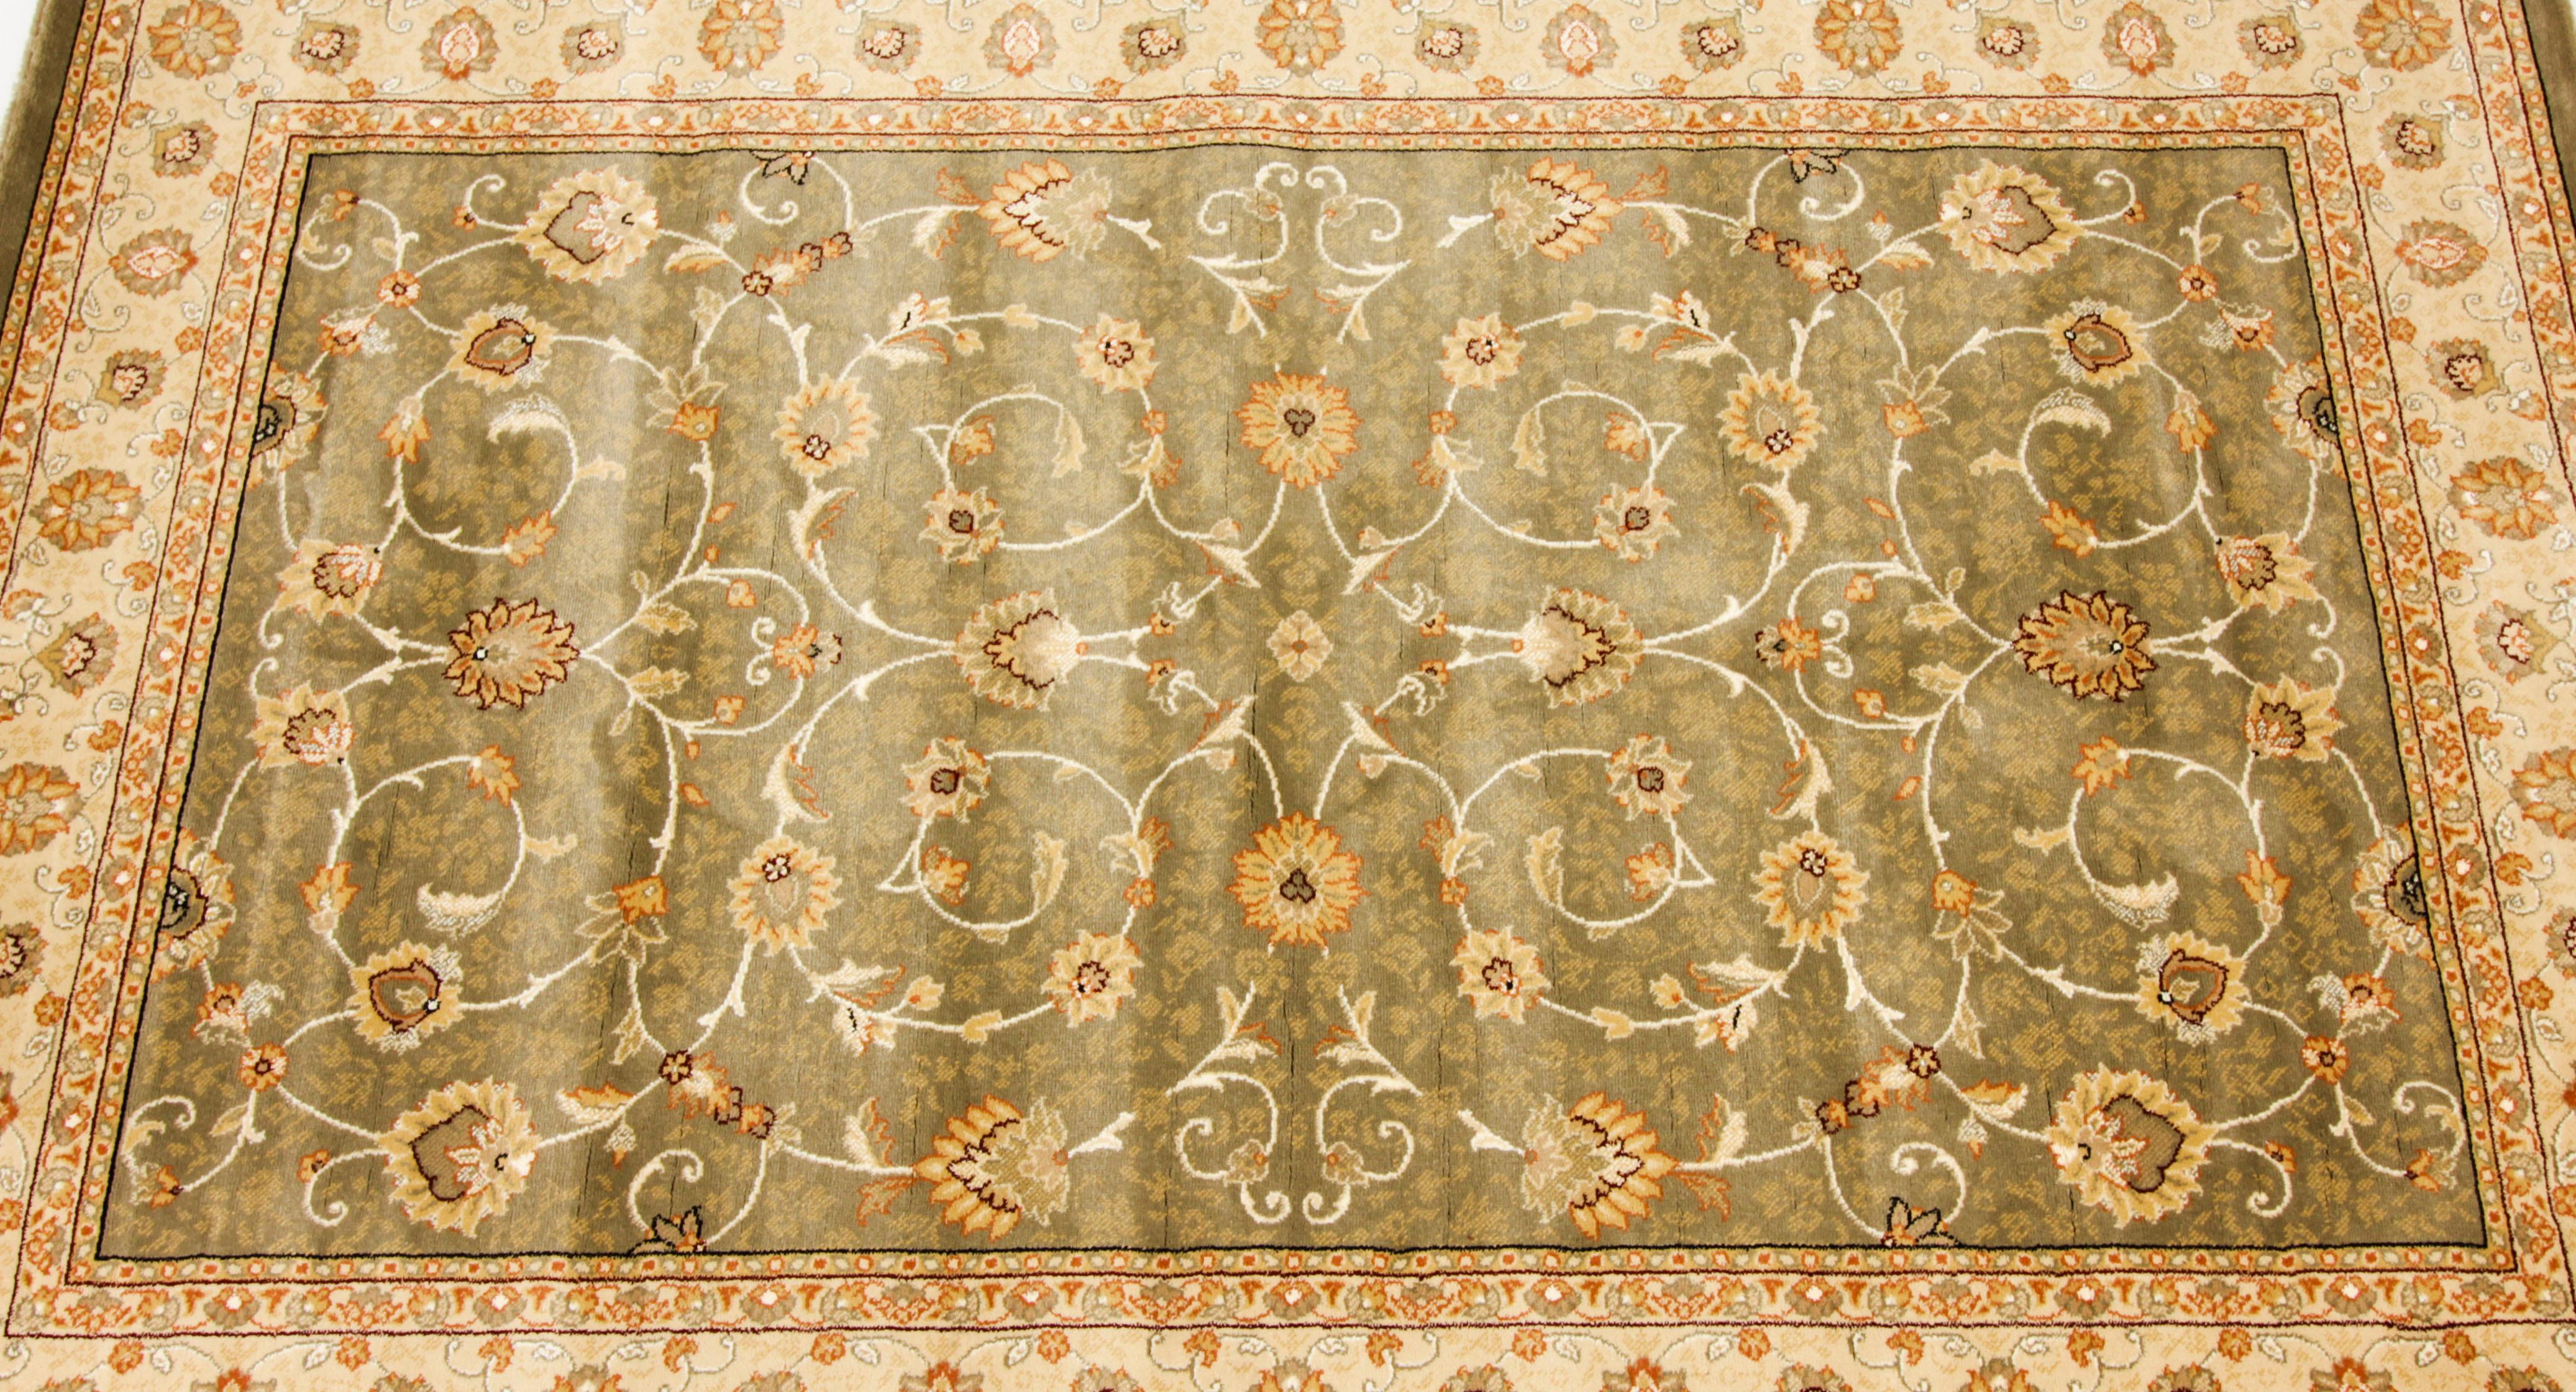 Dieser sehr elegante, hochwertige Vintage-Teppich von Aebela wurde von Mastercraft in Lascashire vertrieben und stammt aus dem letzten Viertel des 20. Jahrhunderts.

Dieser Artikel ist Teil der Kollektion Noble Art Rugs, die sich durch eine